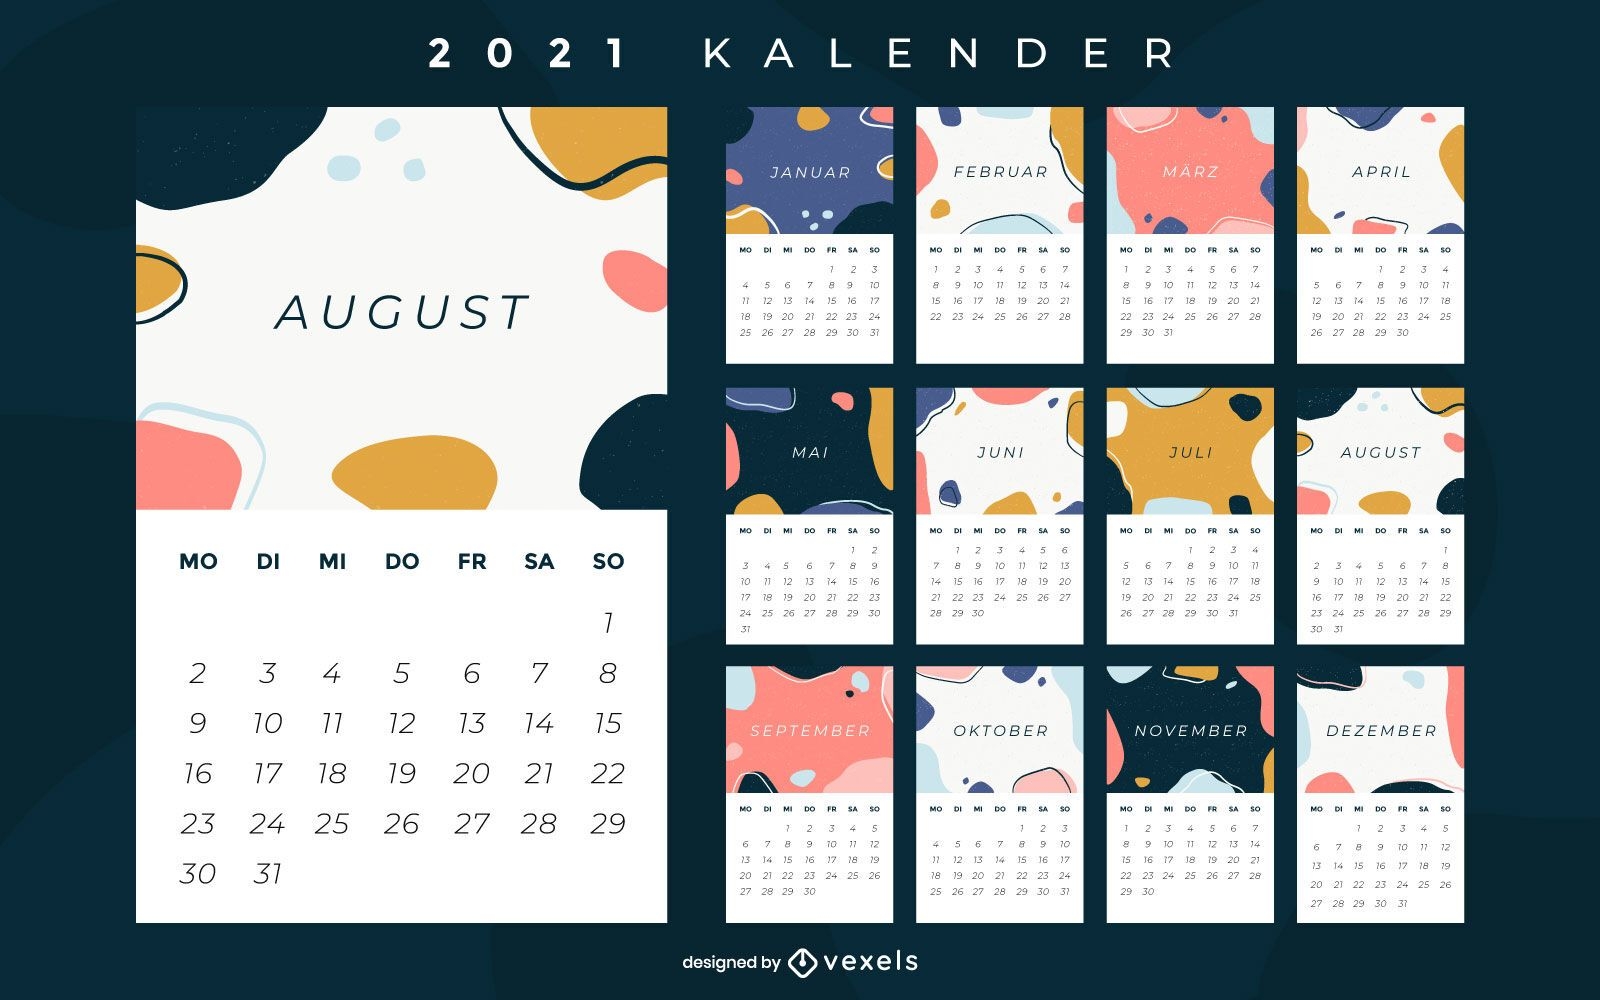 Resumen calendario alemán 2021